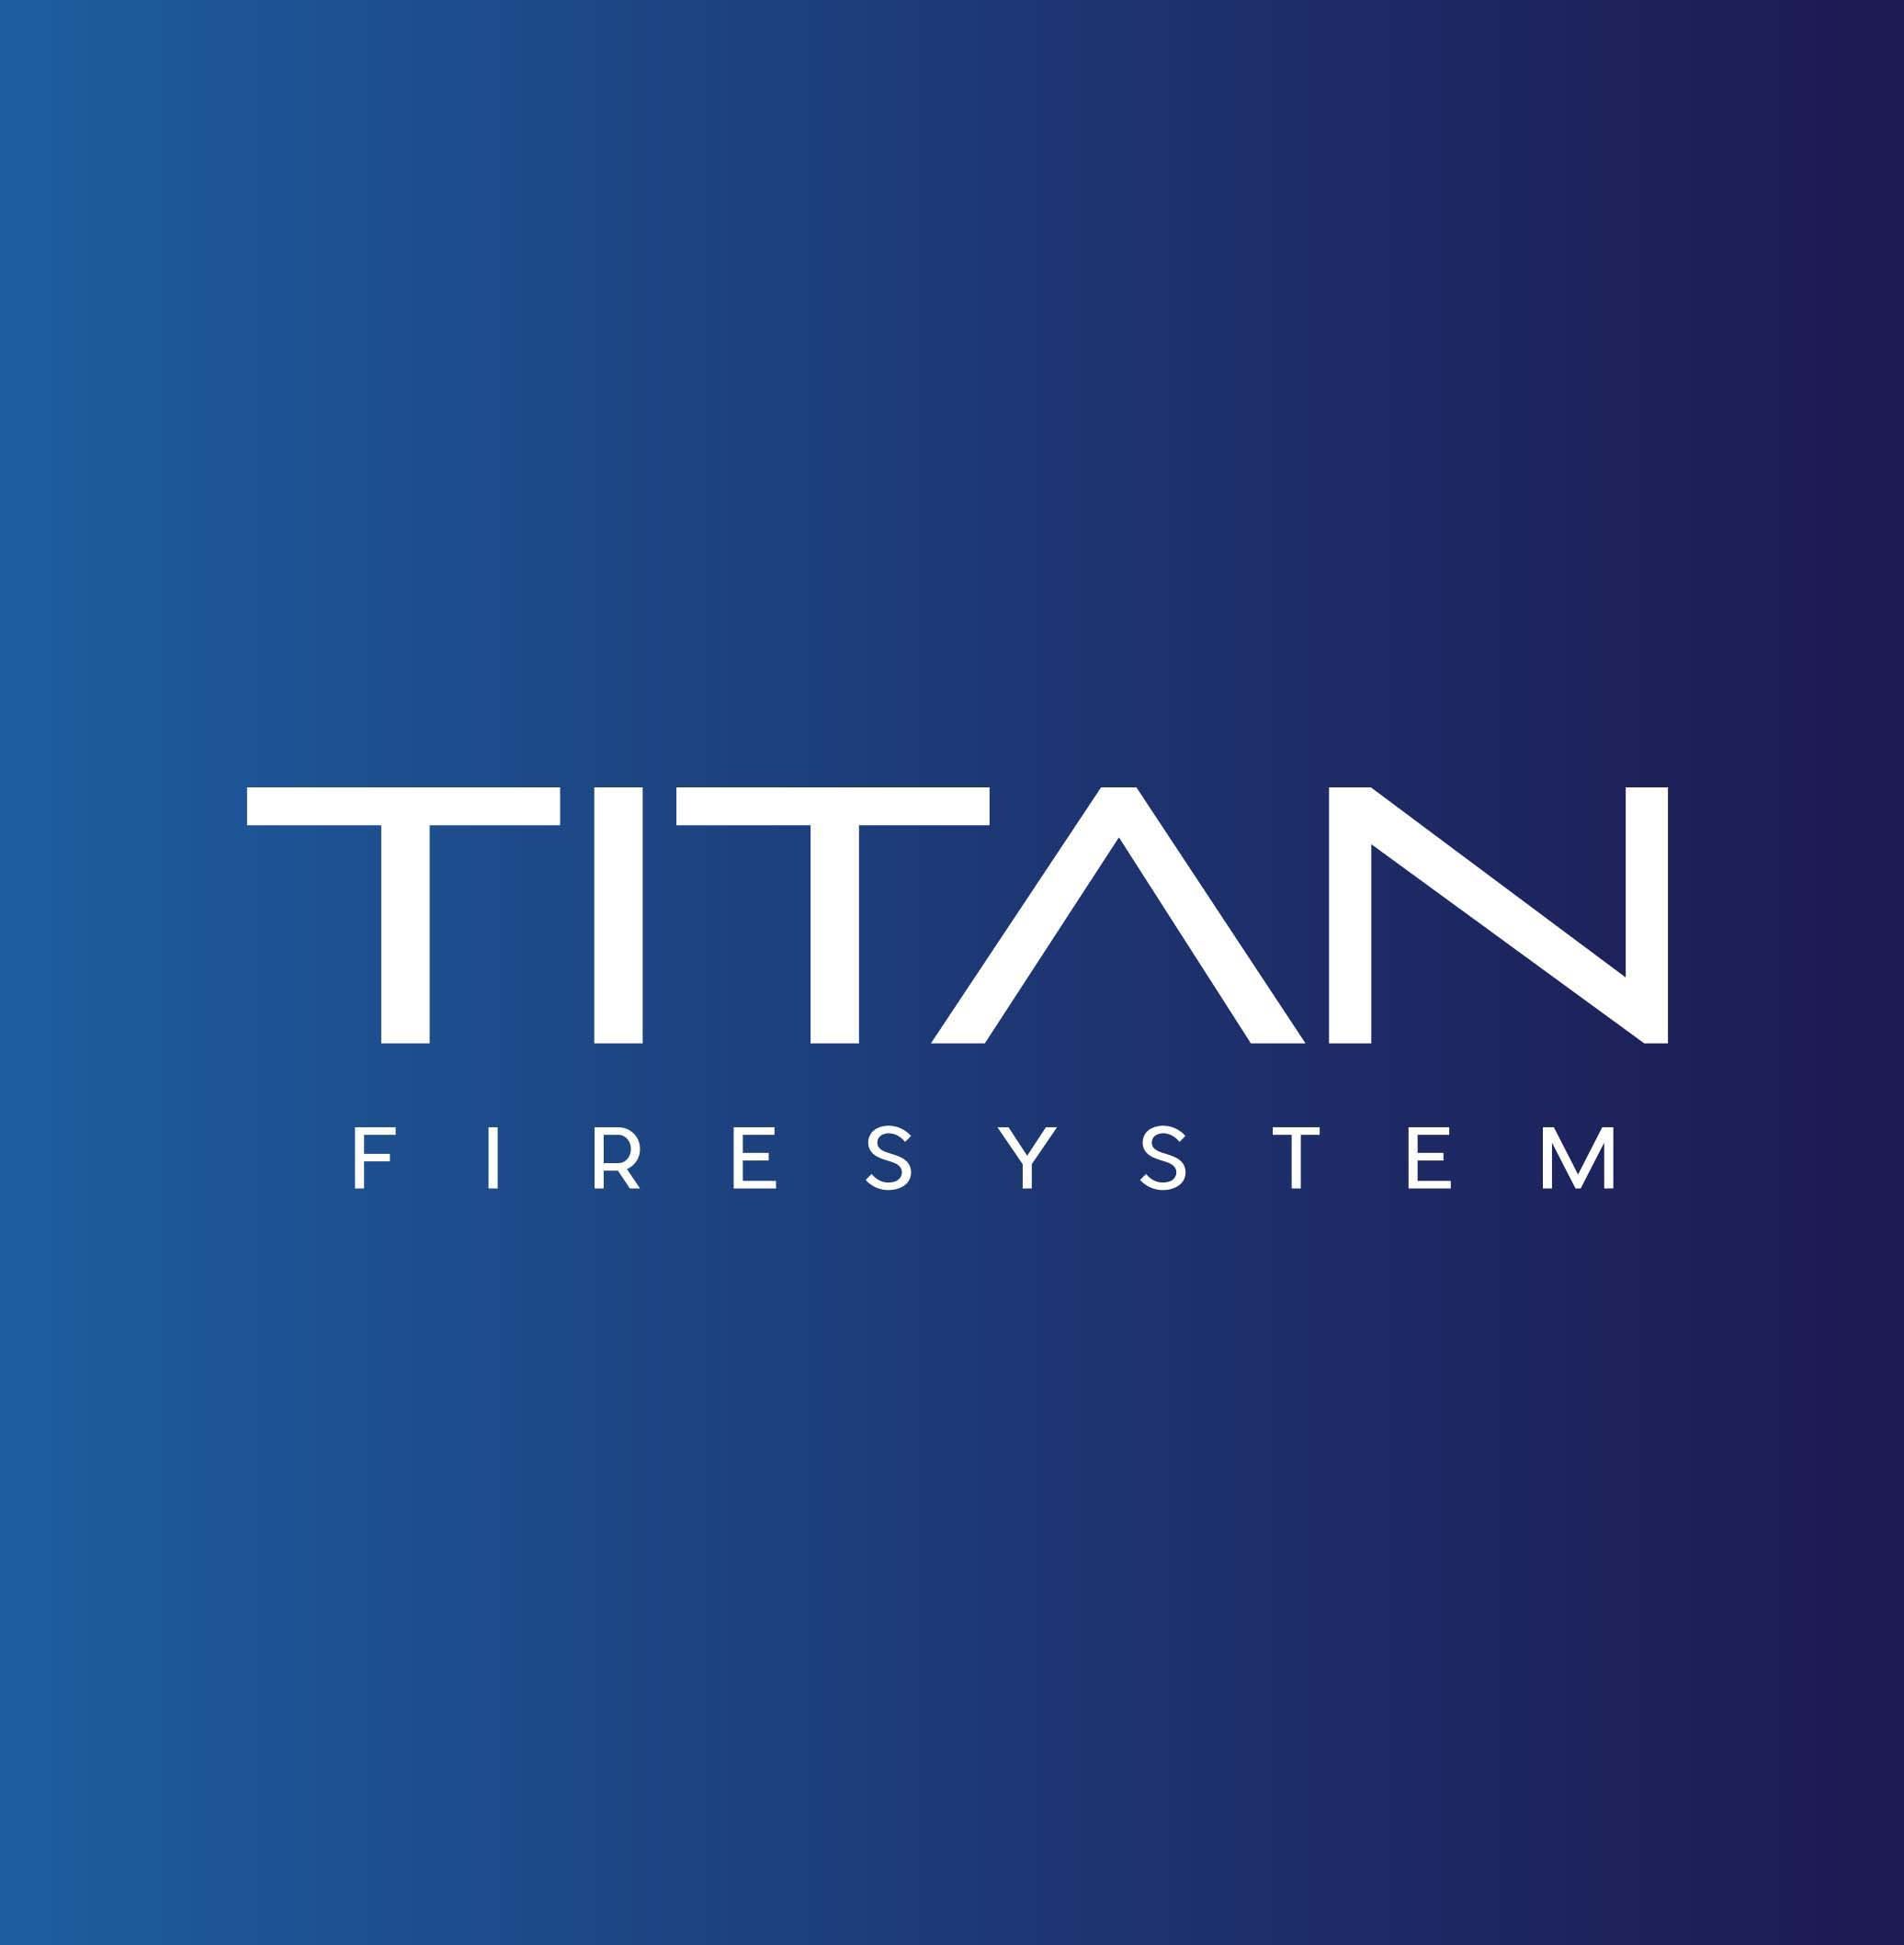 Titan Fire System